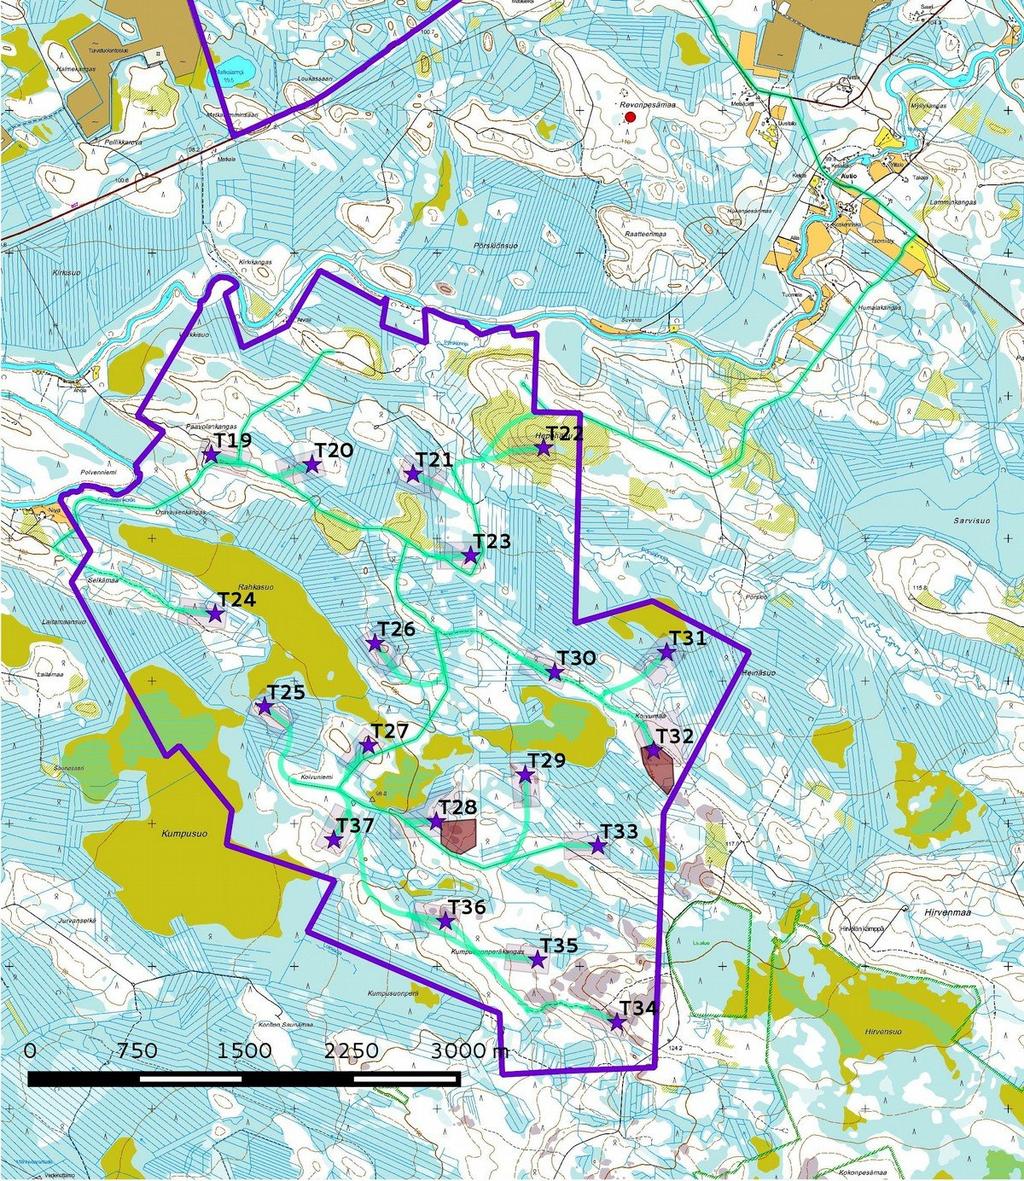 4 Kartta 2a. Eteläinen alue / Hepoharju. Hankealueen rajaus violettina viivana, voimalapaikat tähtenä ja tielinjaukset vihreänä.